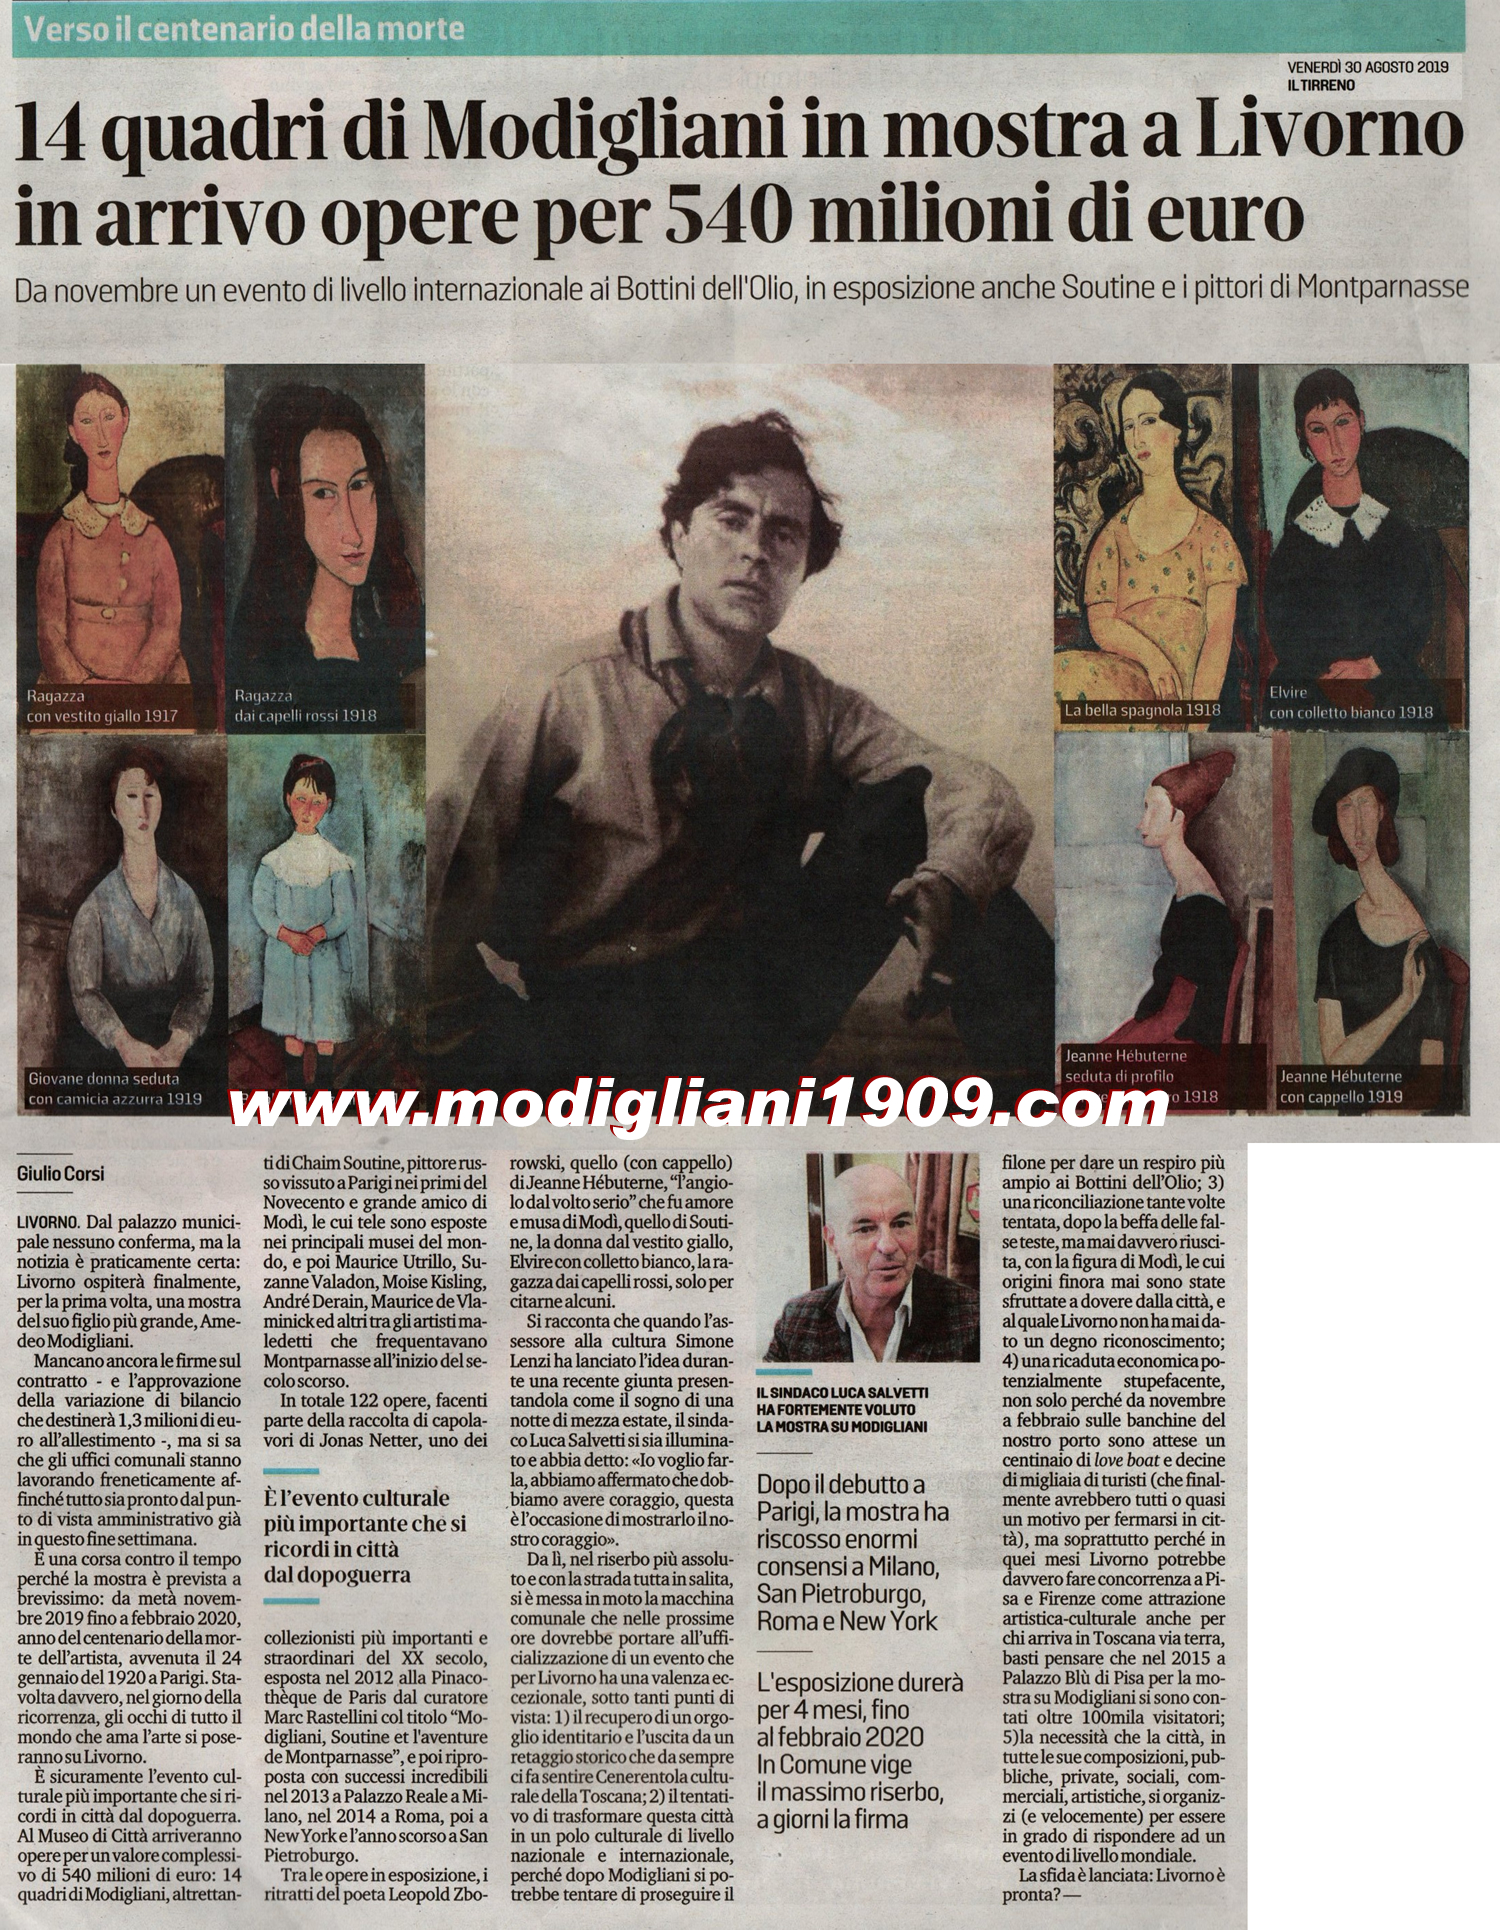 14 opere di Modigliani in mostra a Livorno